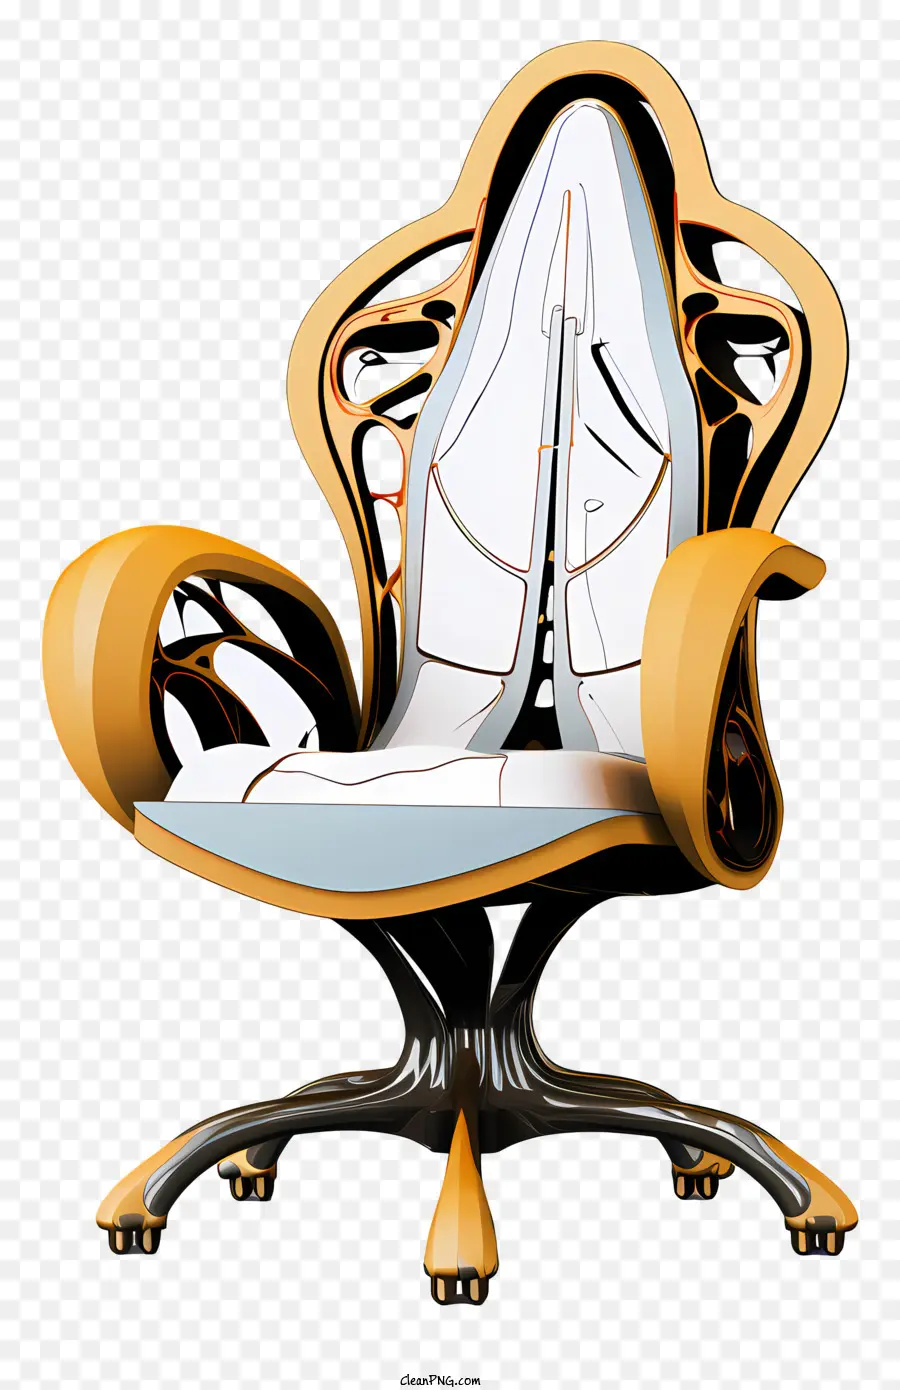 Futuristischer Bürostuhl Weiß und Gold Design Schwarze Akzente Rücken und Sitz golden - Futuristischer Bürostuhl mit weißem, goldenem, schwarzem Design